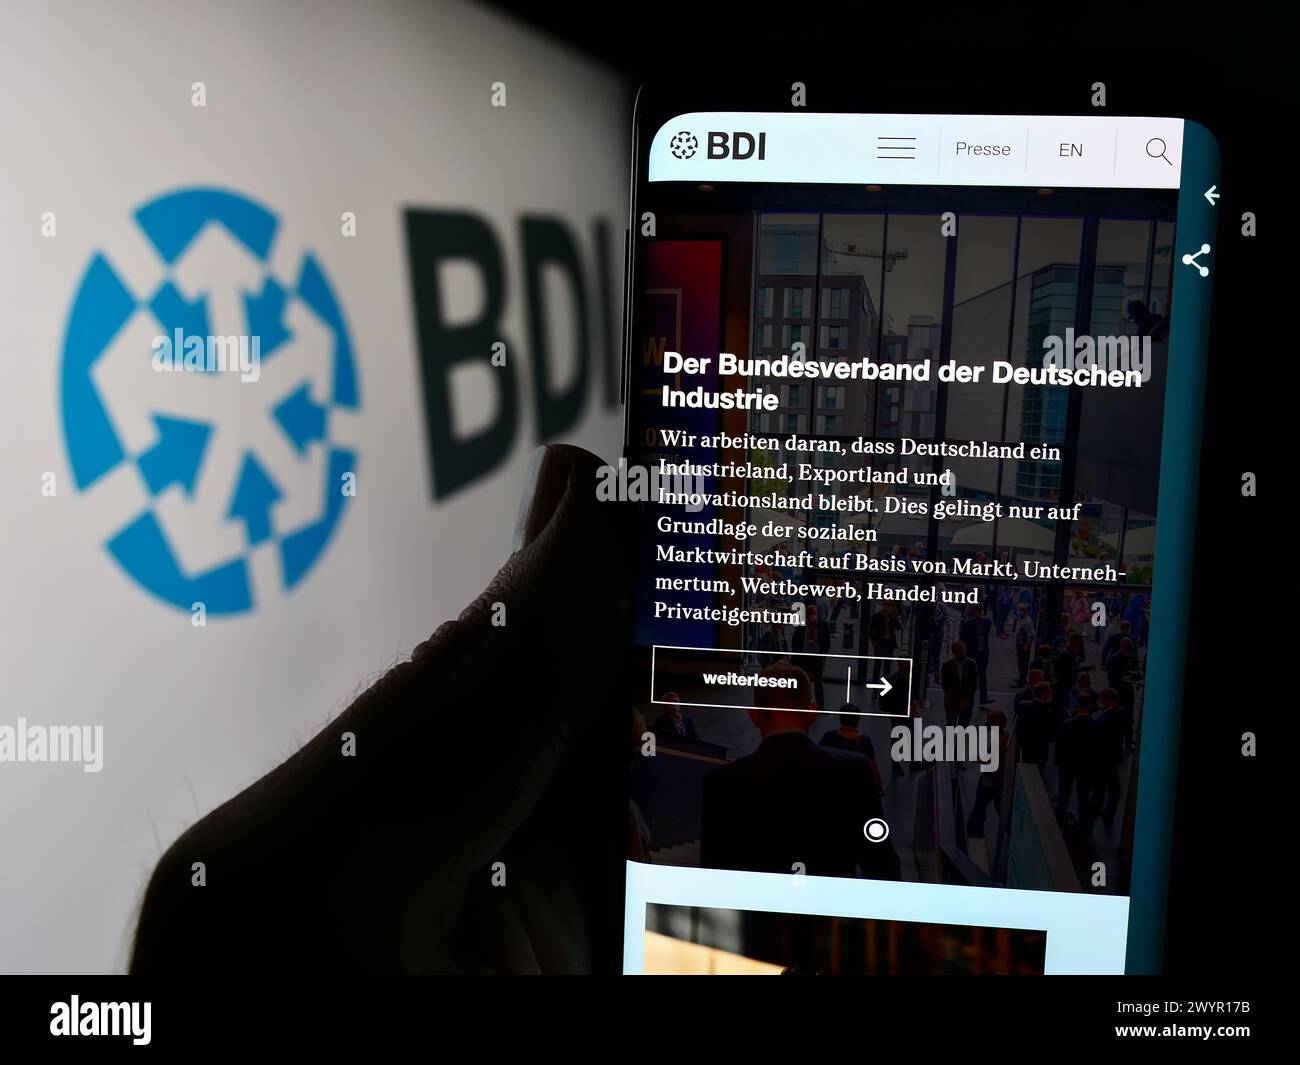 Persona che detiene un cellulare con pagina web della Bundesverband der Deutschen industrie e.V. (BDI) davanti al logo. Messa a fuoco al centro del display del telefono. Foto Stock